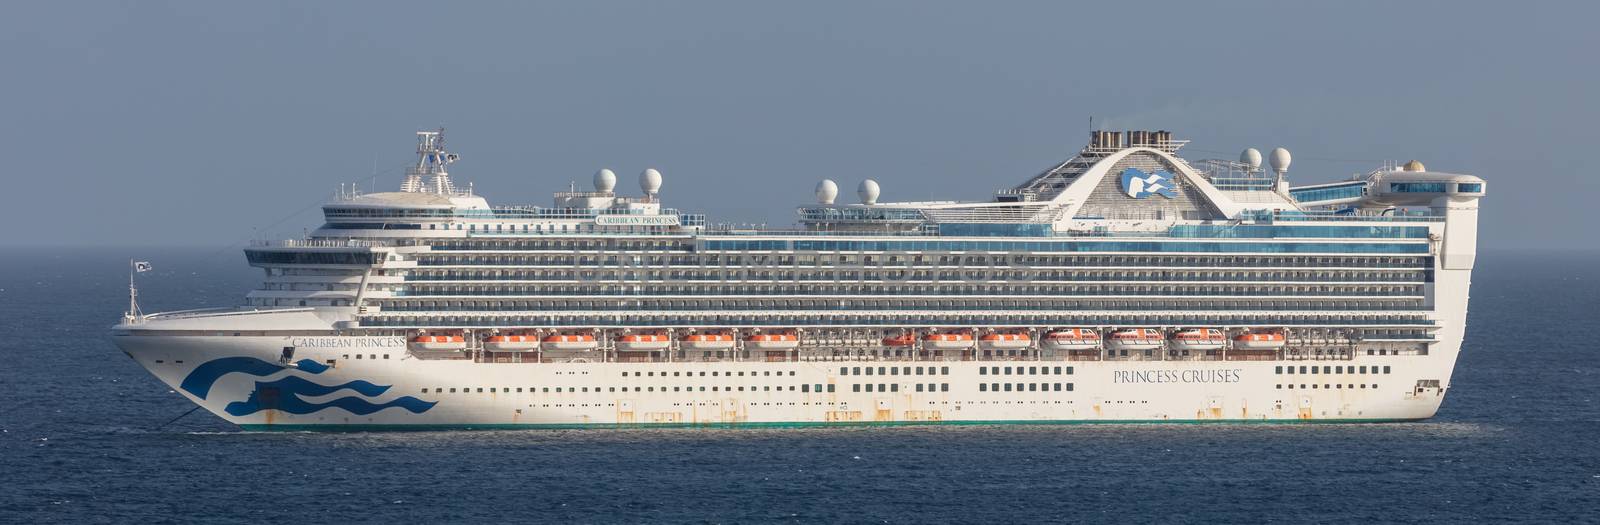 Carlisle Bay, Barbados, West Indies - May 16, 2020: Caribbean Princess cruise ship anchored next to Barbados